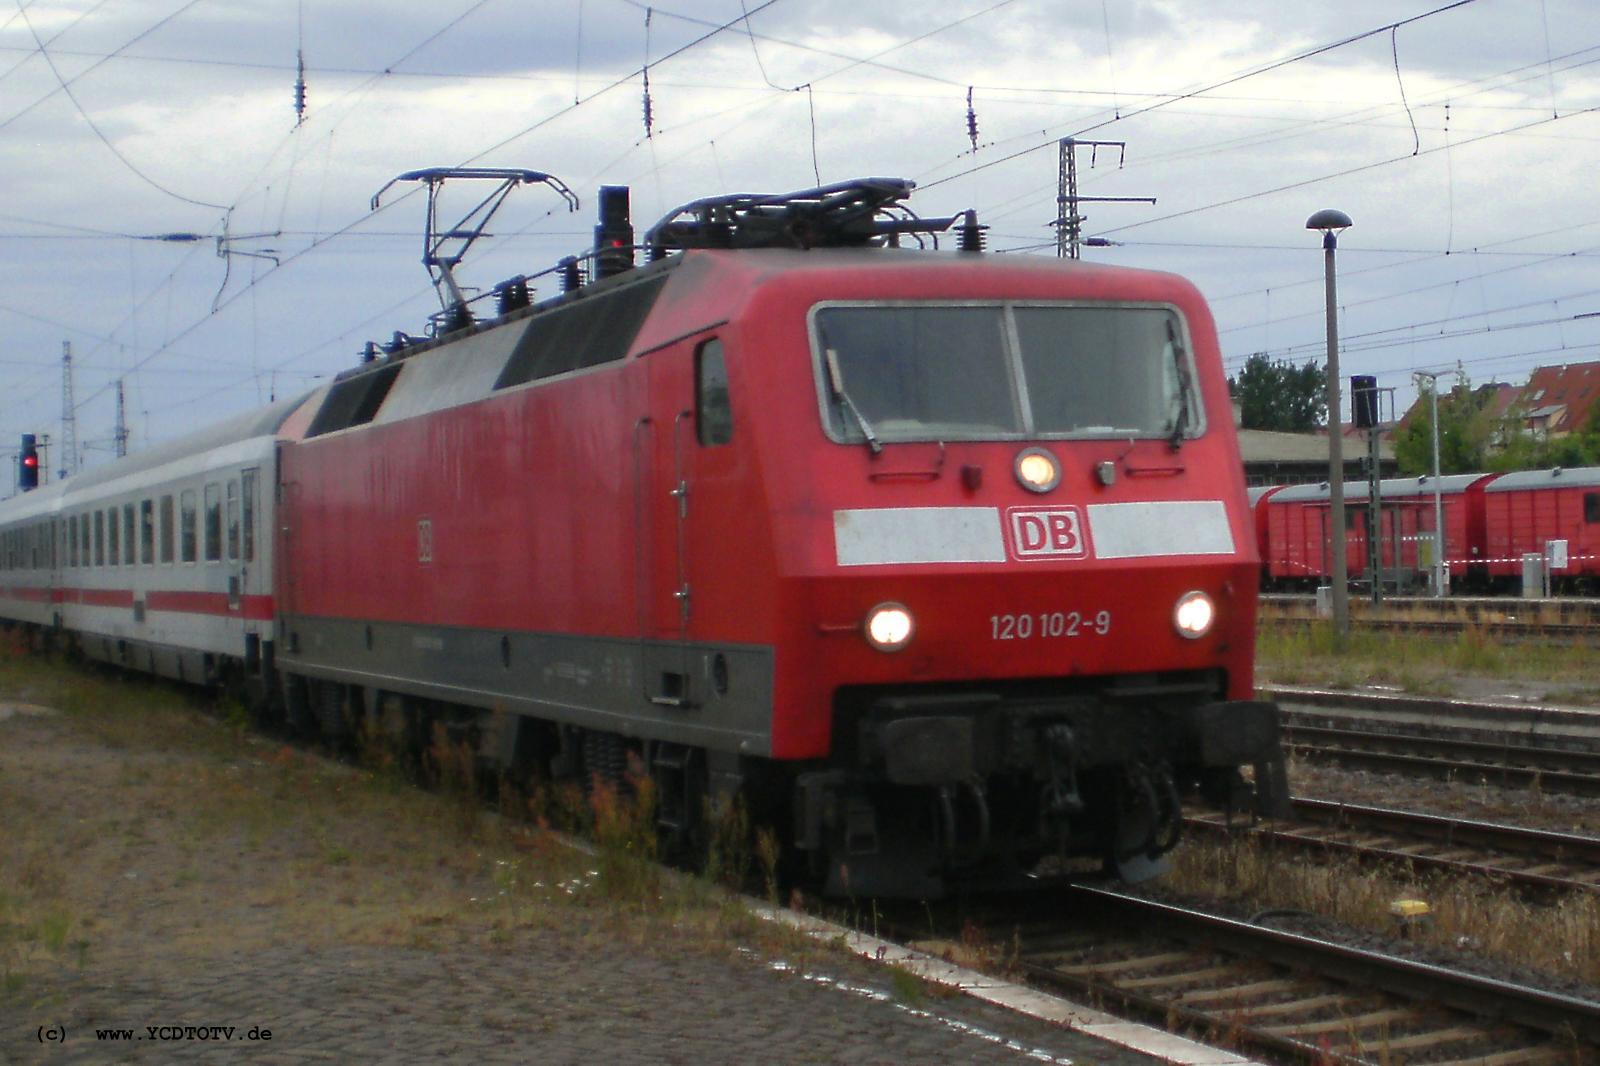 Bahnhof Stendal 05.07.2010, 120 102-9 